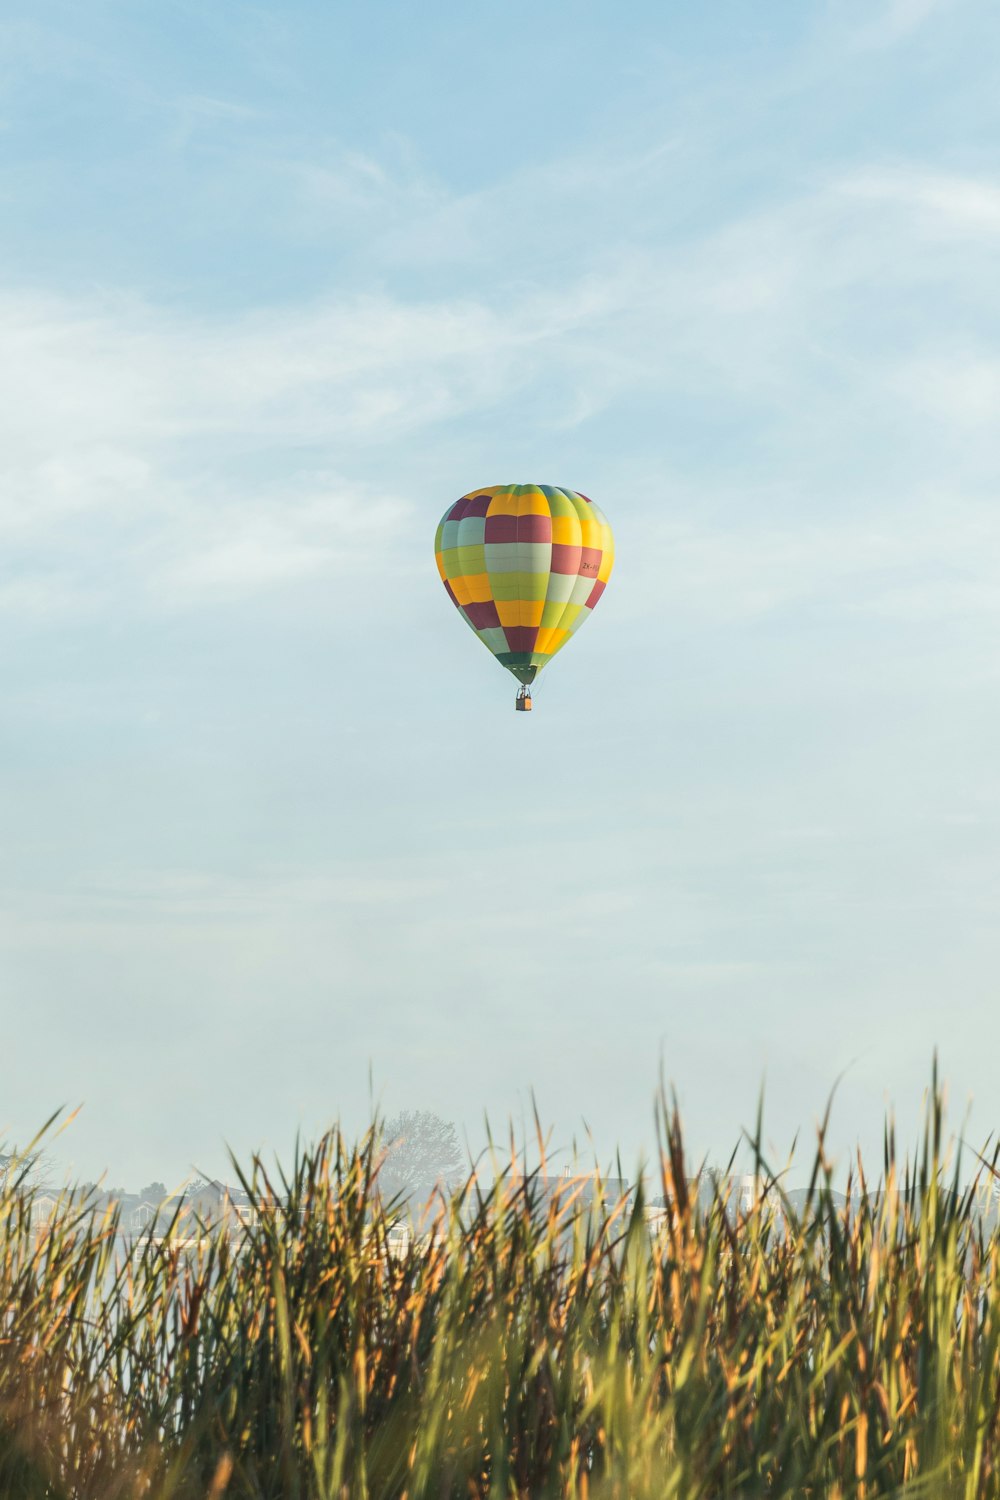 Un globo aerostático volando sobre un campo de hierba alta